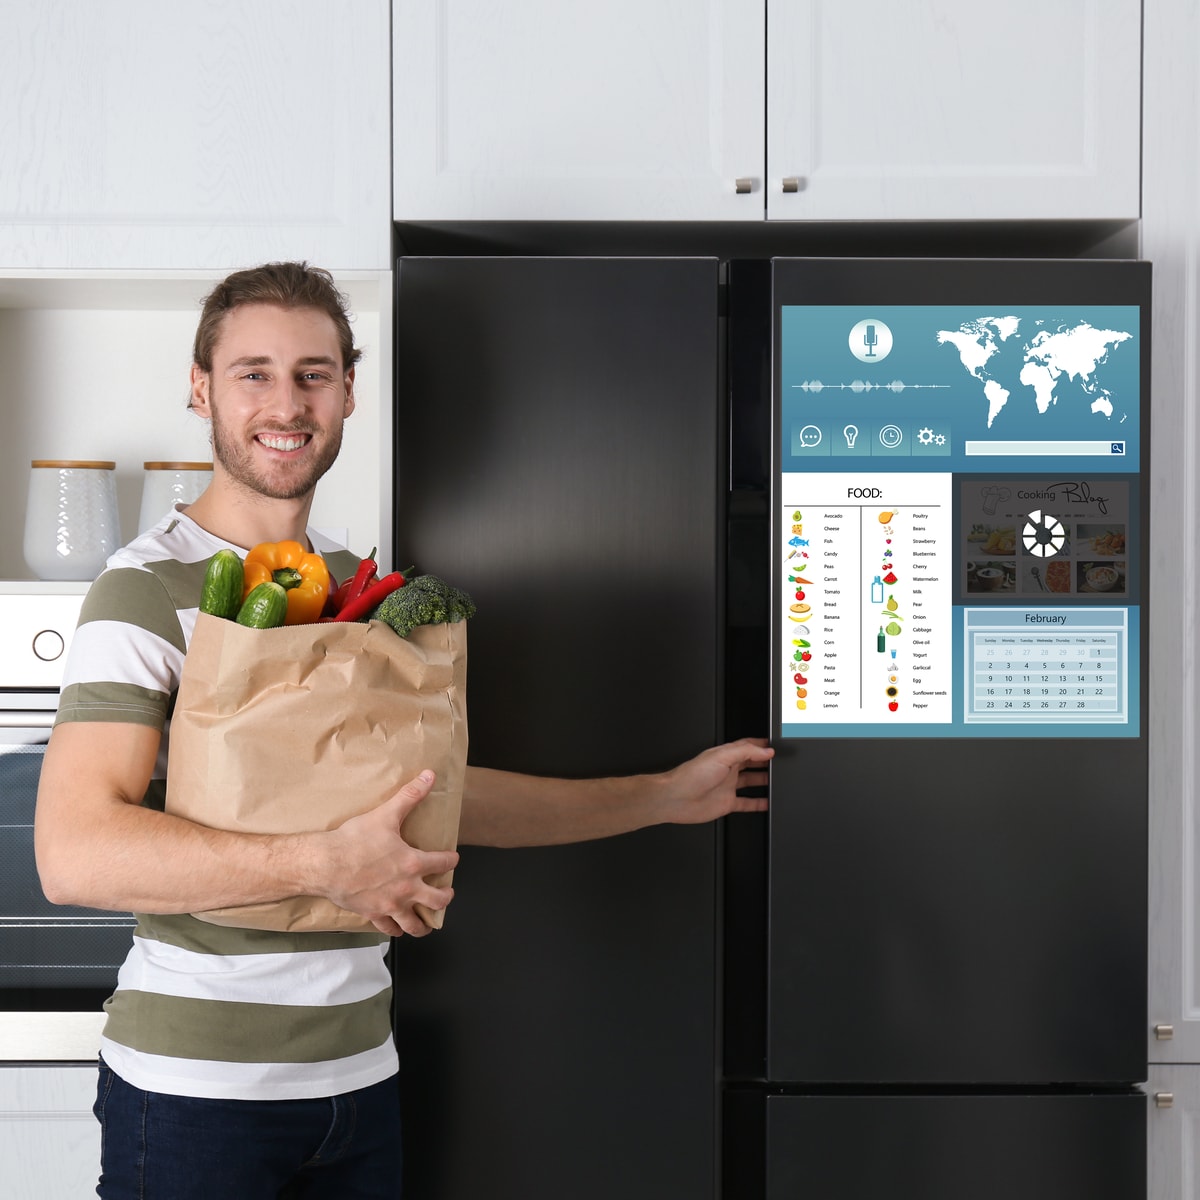 мужчина с продуктами рядом с умным холодильником